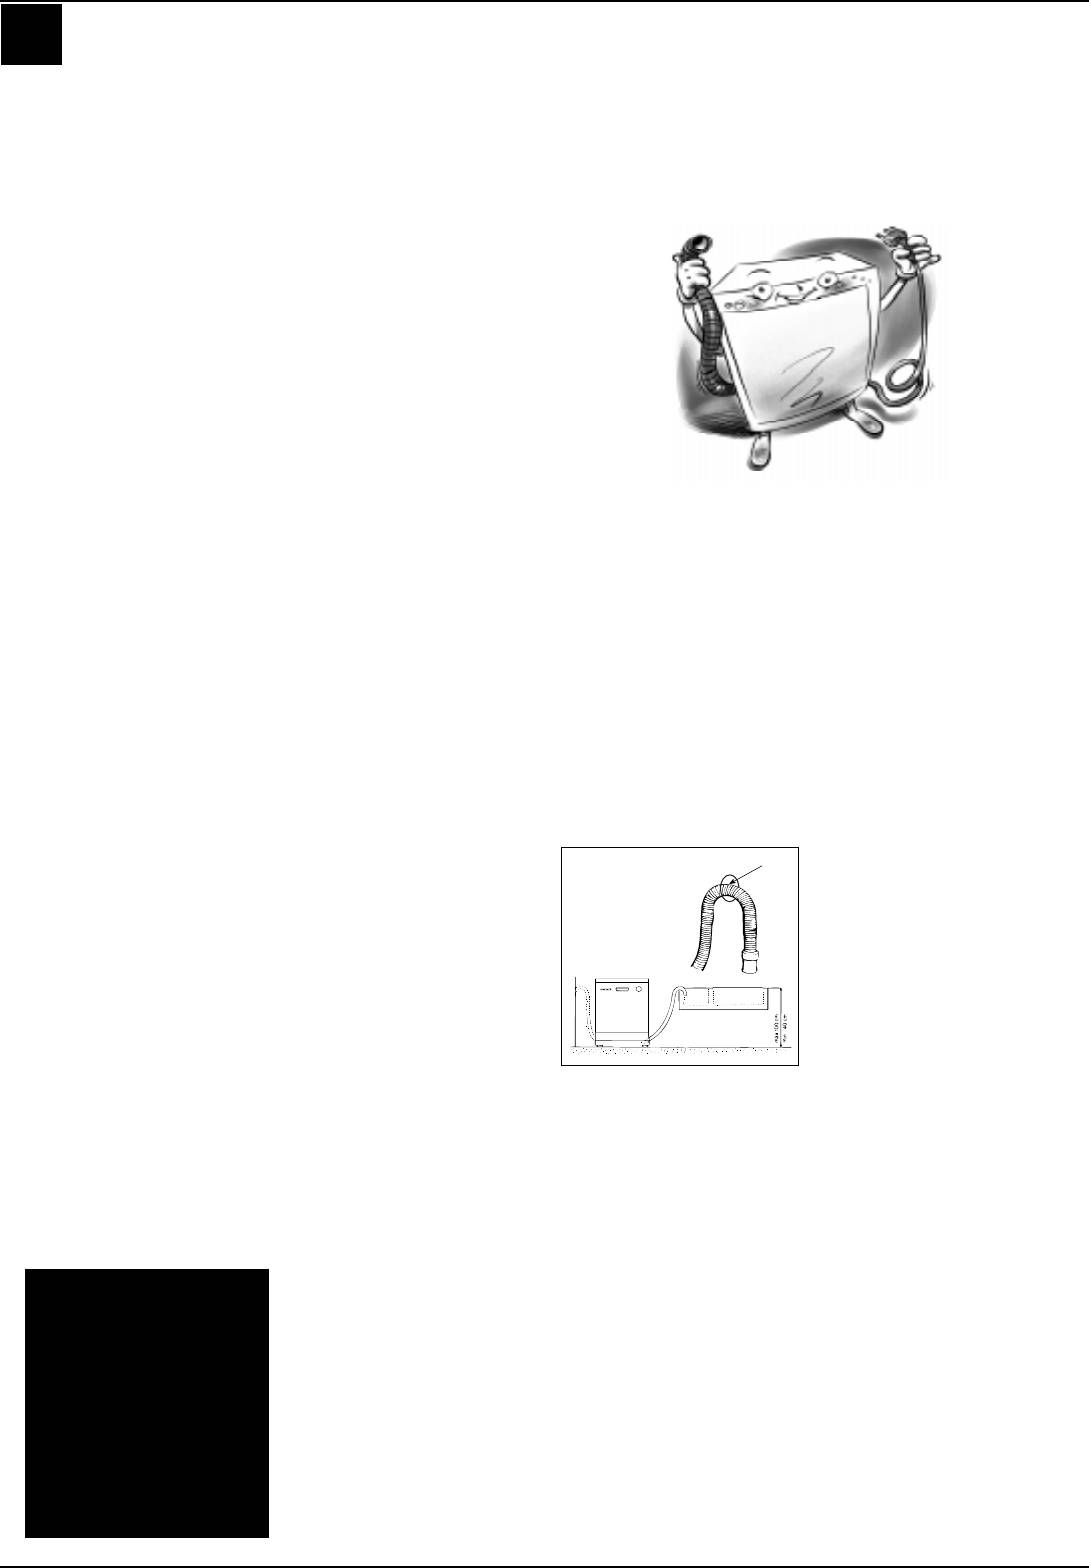 Инструкция (manual) к посудомоечной машине ARISTON LI 420, LI 460, LI 480 : Сервисный центр RT